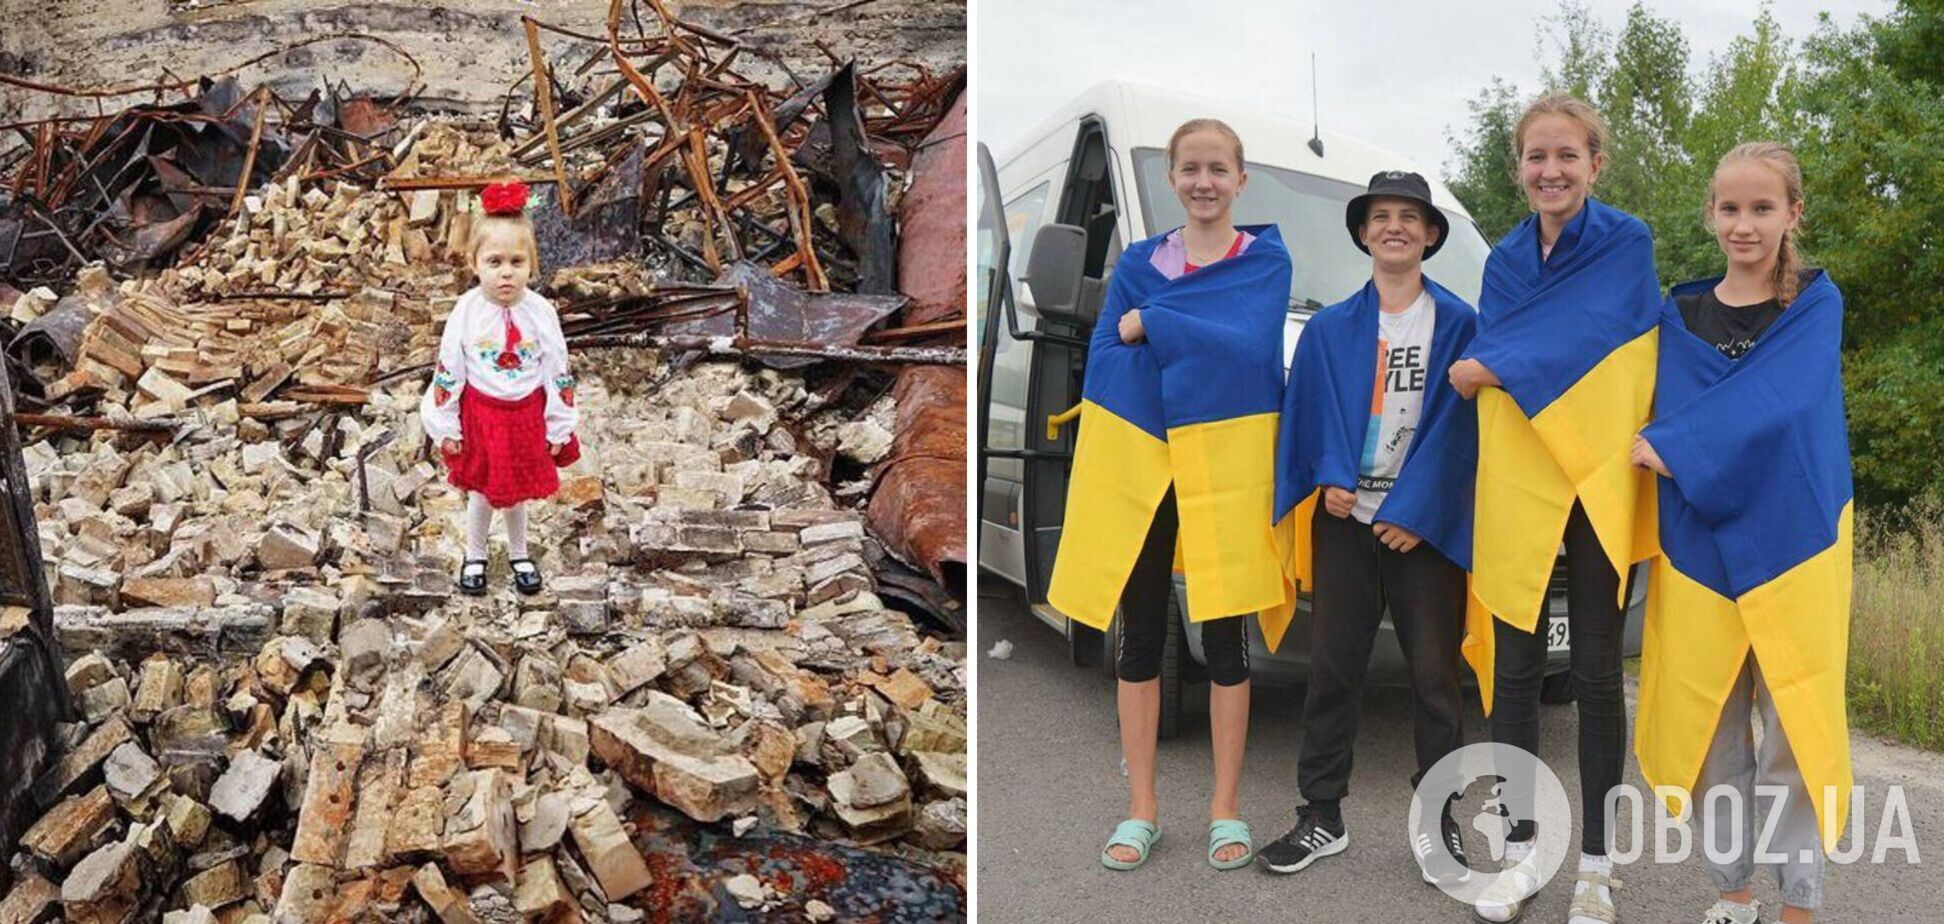 Цивилизованному миру трудно представить: в канун Дня знаний Украина вернула 11 похищенных Россией детей. Фото и видео